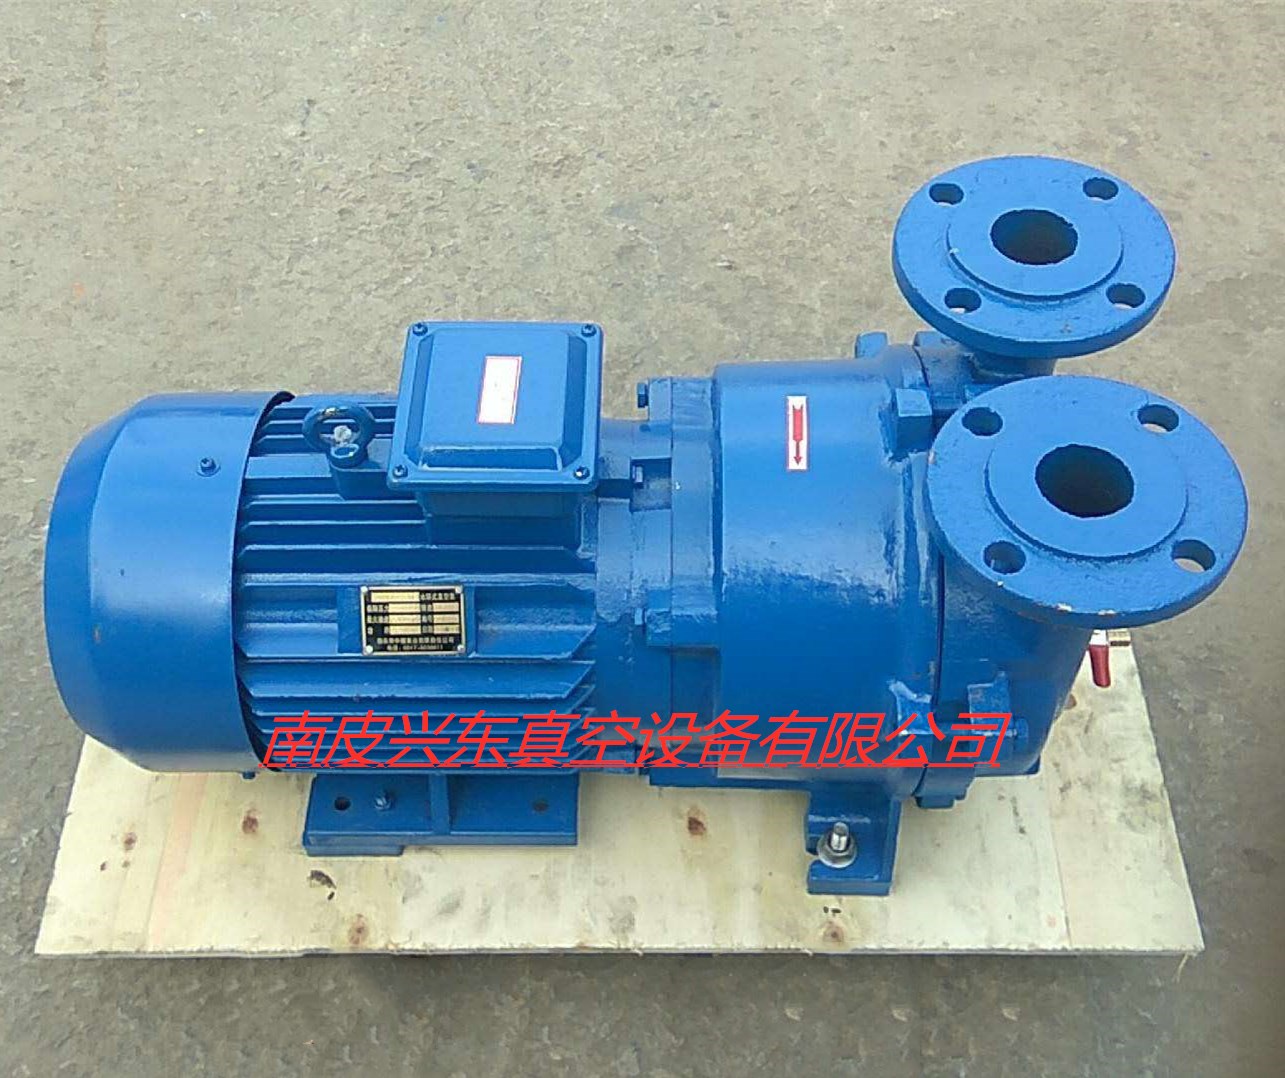 厂家供应水环式真空泵 2BV5131水循环真空泵 钻机真空泵图片